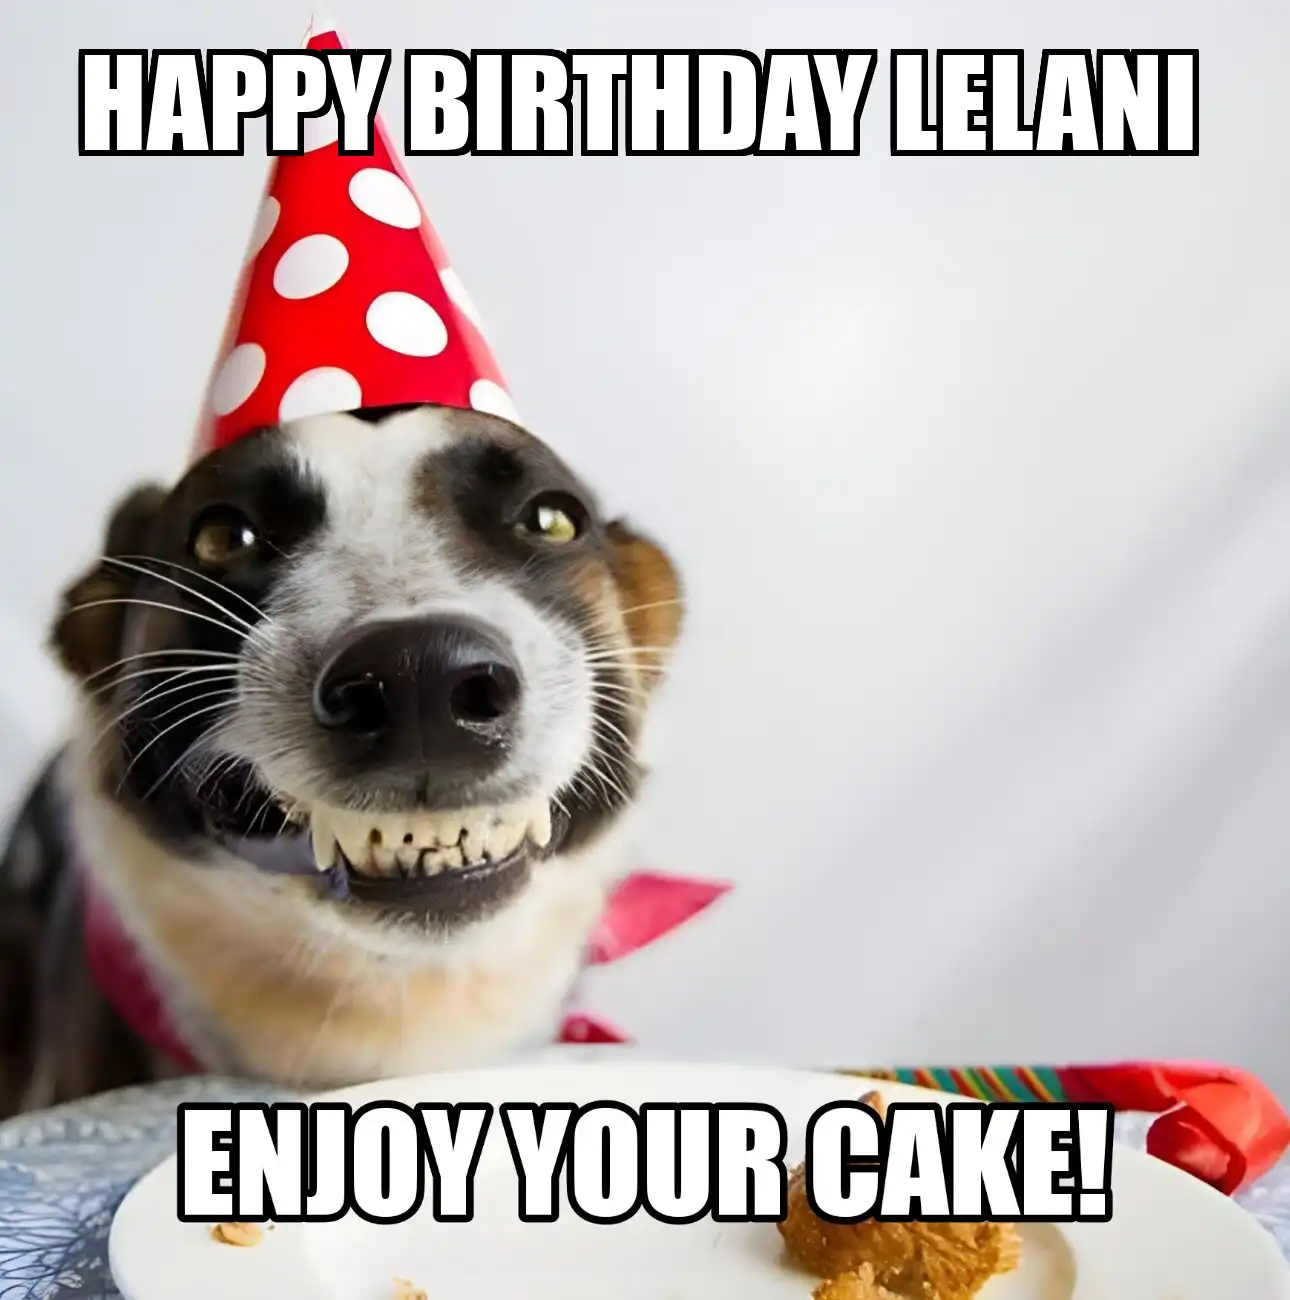 Happy Birthday Lelani Enjoy Your Cake Dog Meme